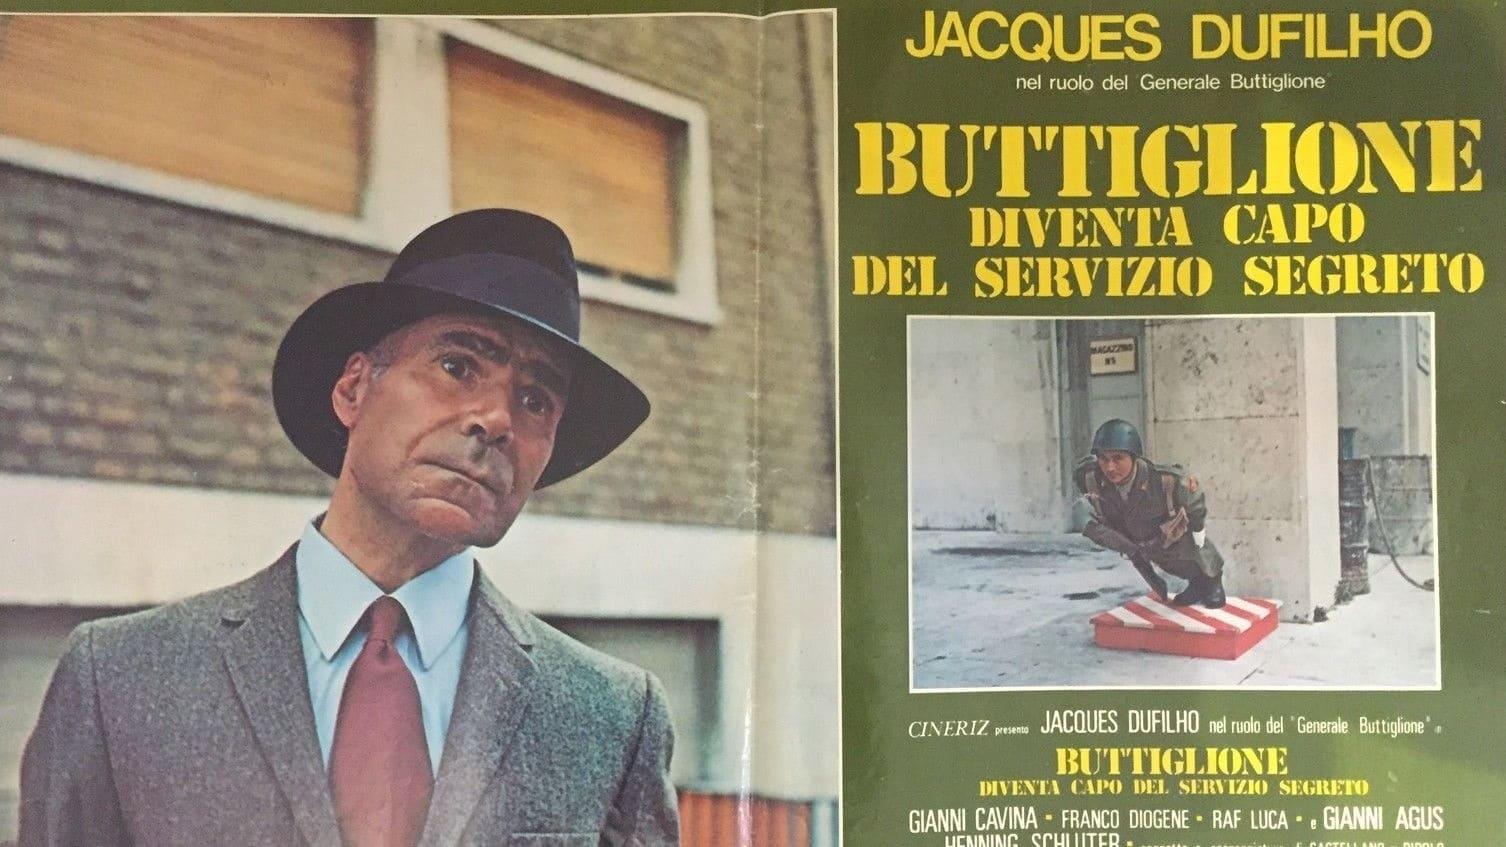 Buttiglione diventa capo del servizio segreto backdrop